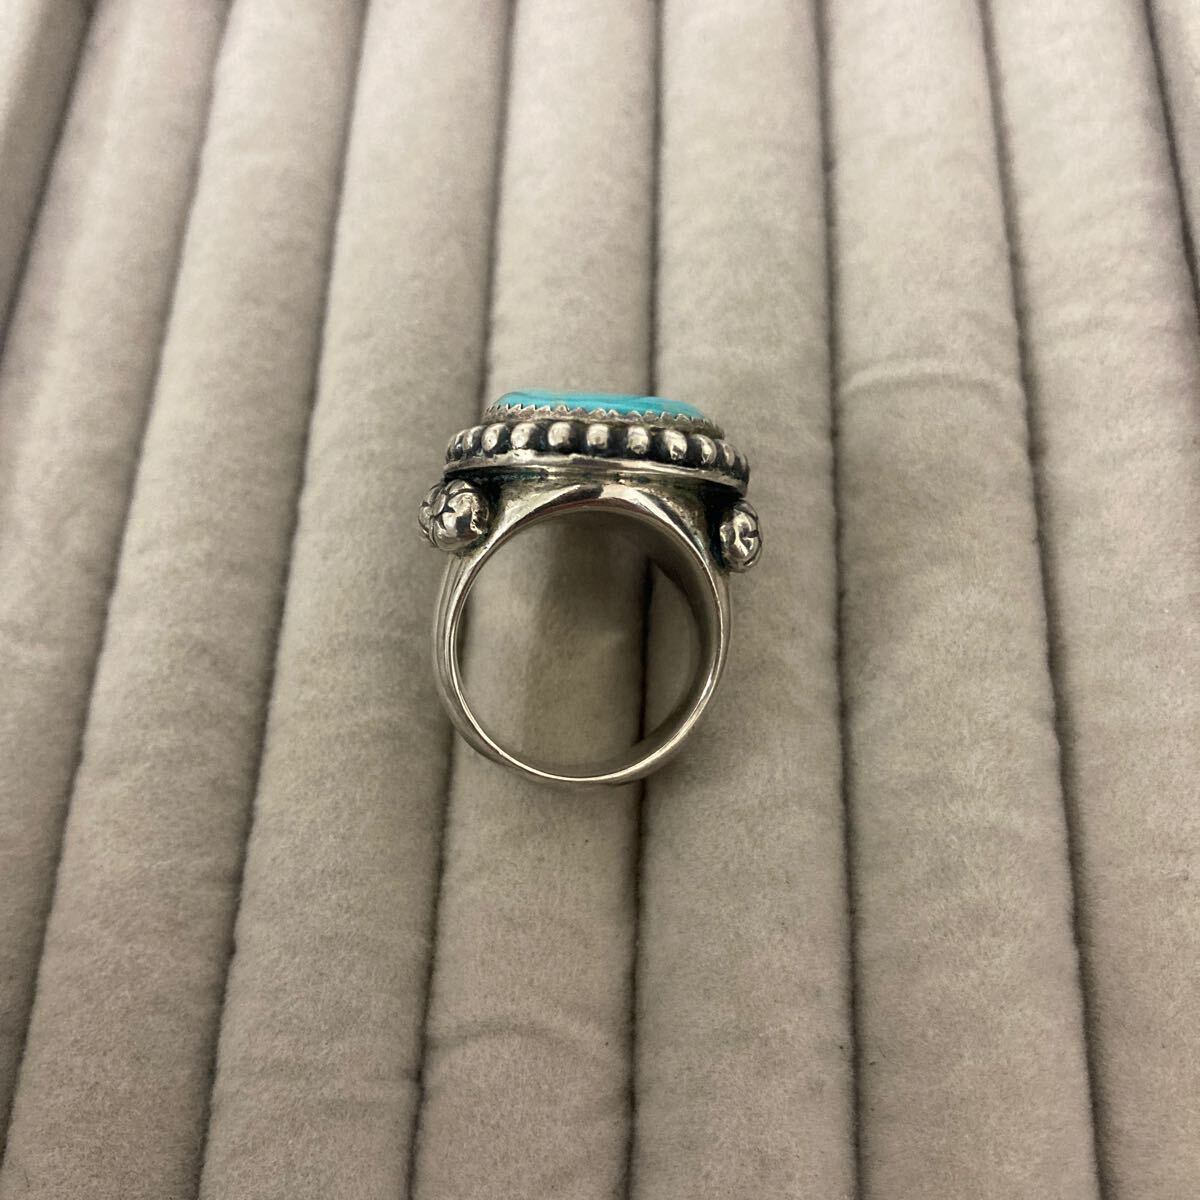  серебряный производства индеец ювелирные изделия бирюзовый кольцо серебряное кольцо 15 номер 30.0g